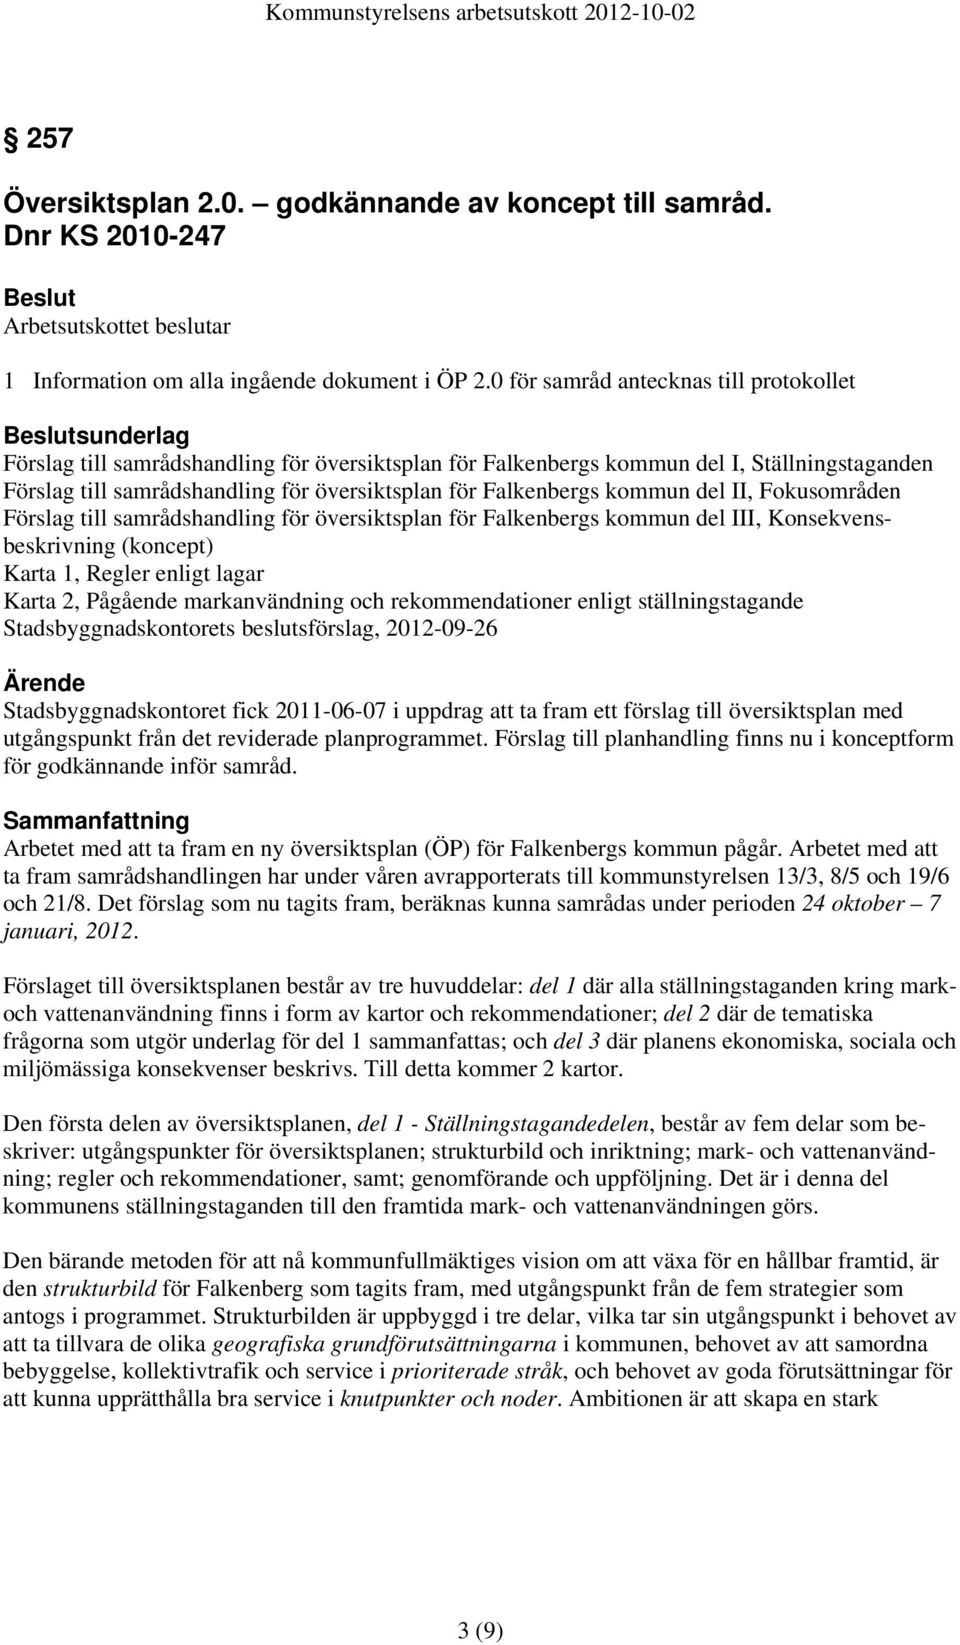 Falkenbergs kommun del II, Fokusområden Förslag till samrådshandling för översiktsplan för Falkenbergs kommun del III, Konsekvensbeskrivning (koncept) Karta 1, Regler enligt lagar Karta 2, Pågående